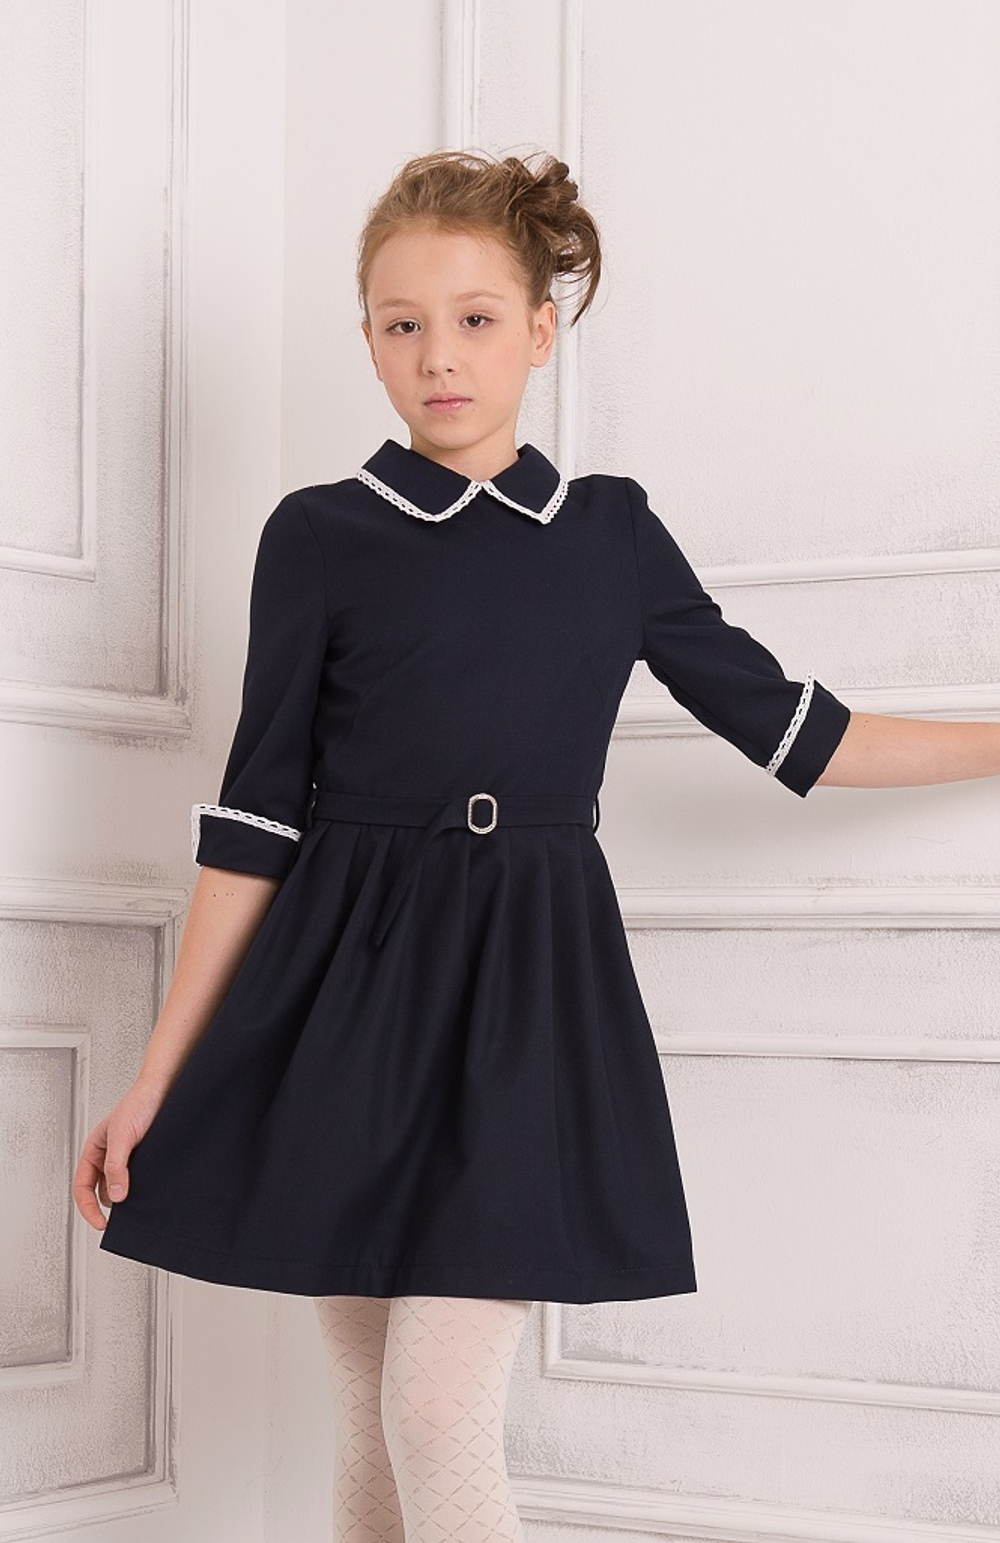 Пт-23,0 Баловень Школьное платье для девочки серое